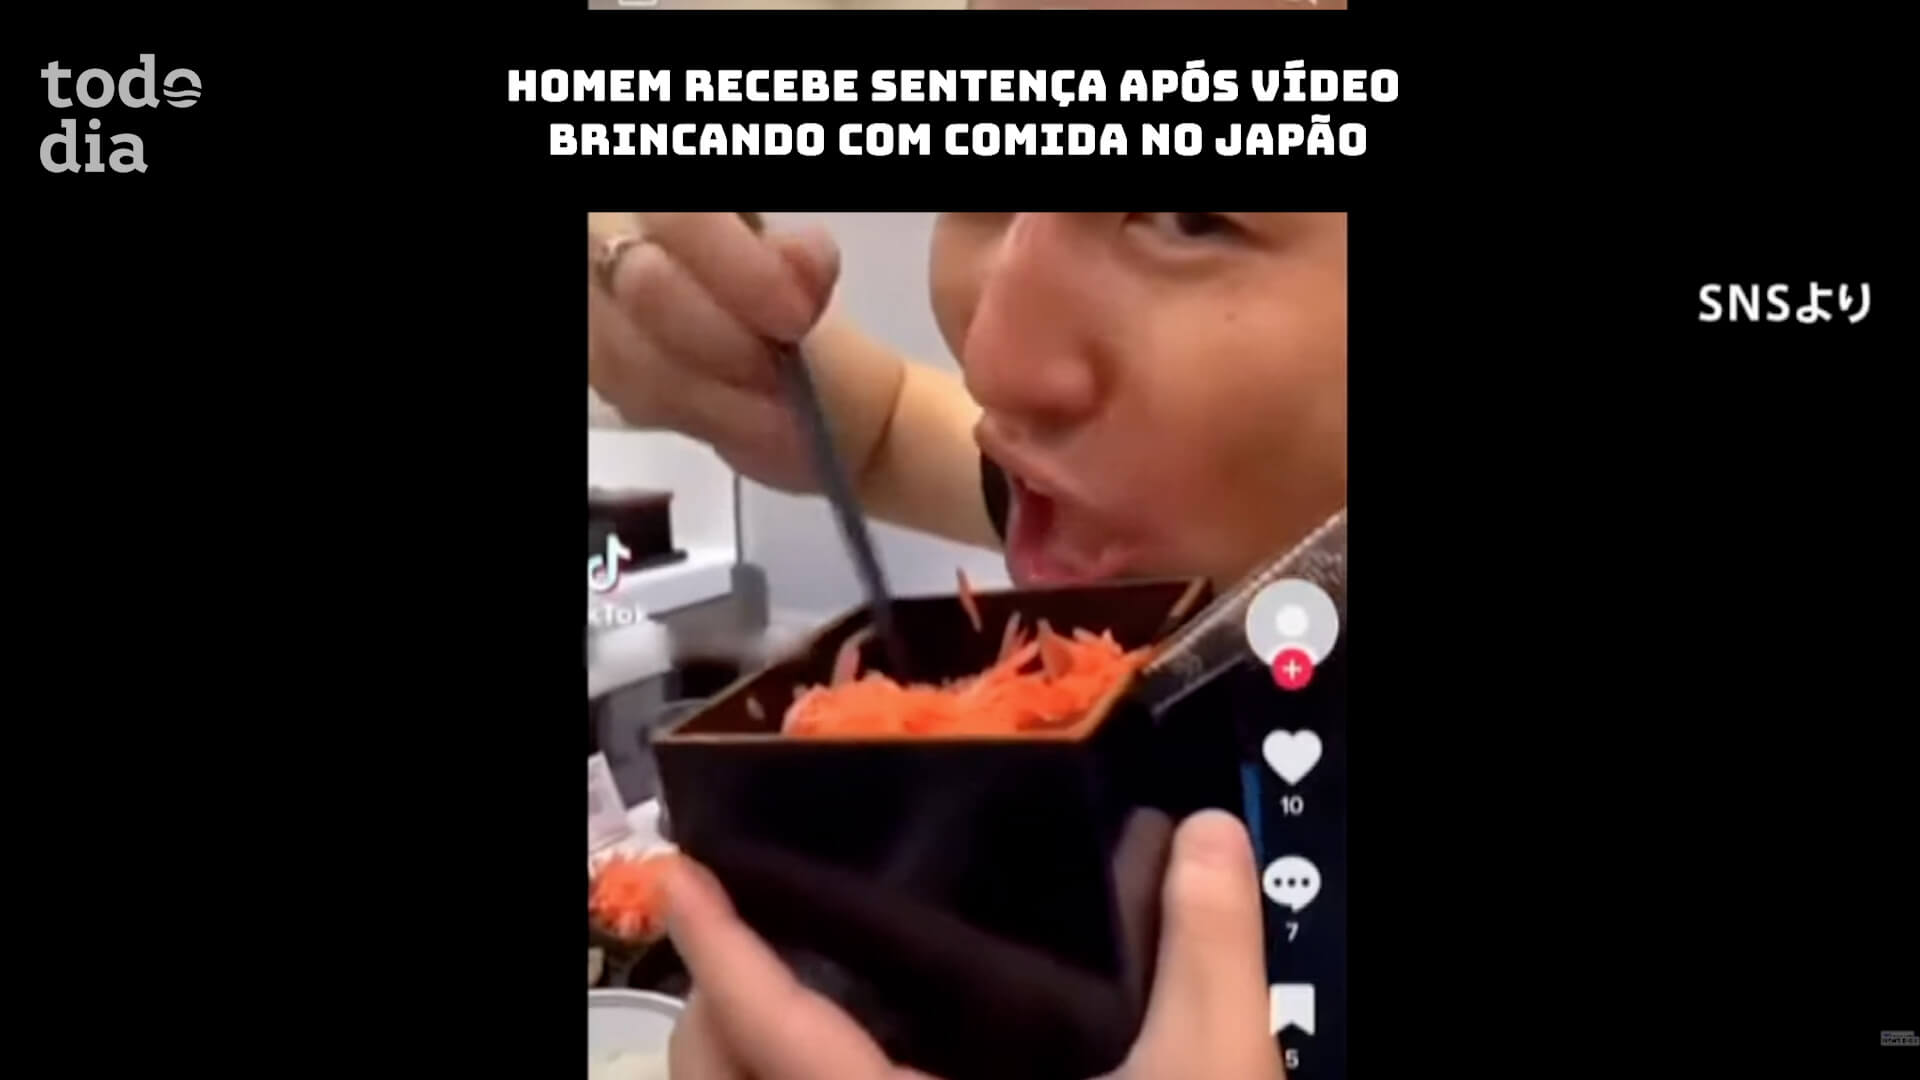 Homem recebe sentença após vídeo brincando com comida no Japão